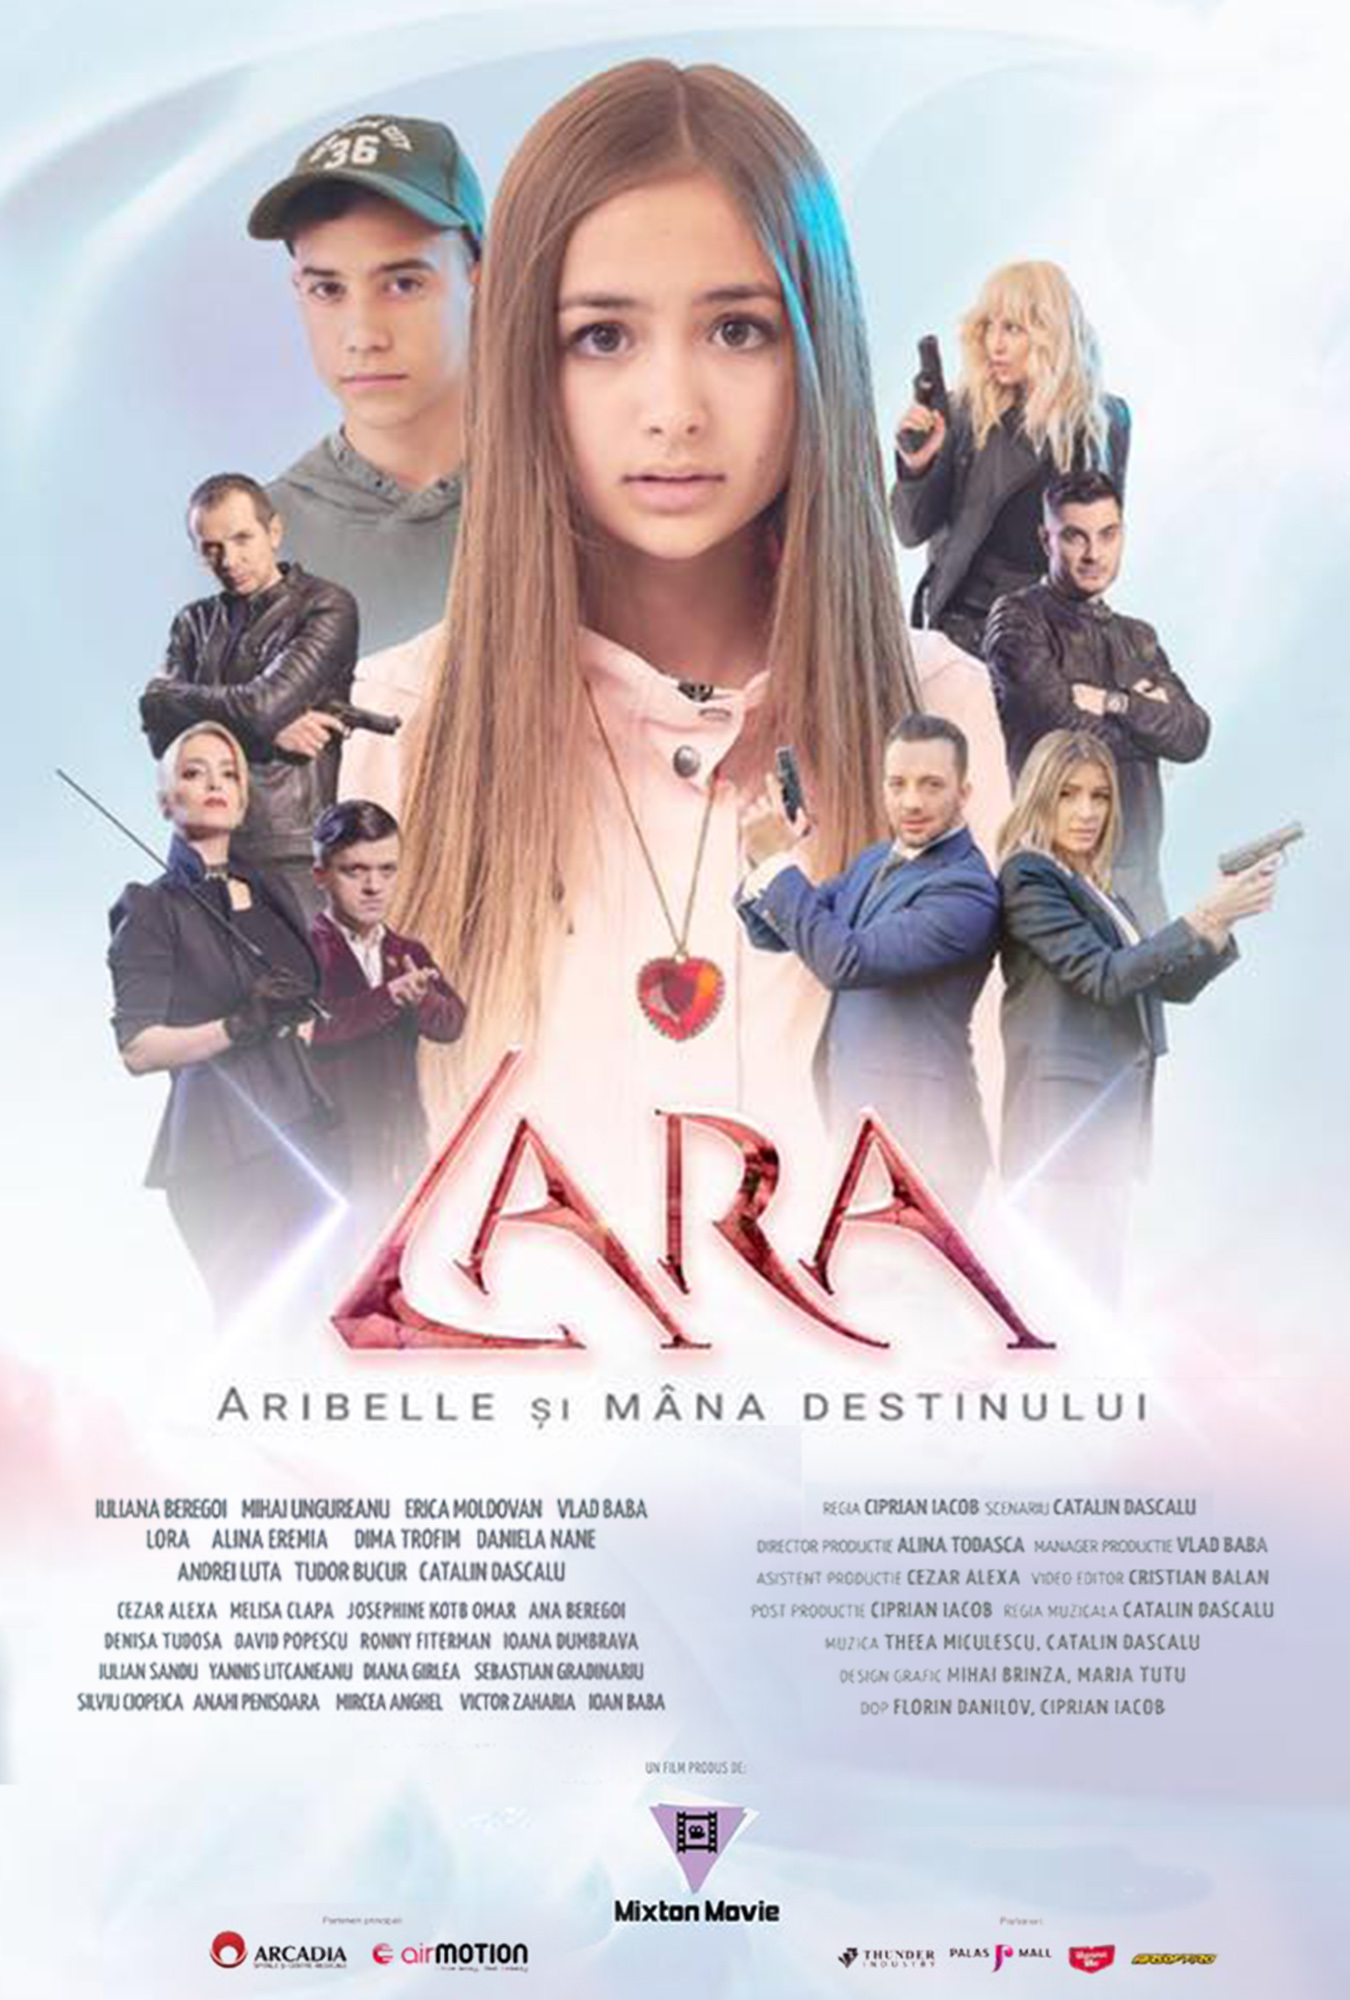 Смотреть Lara - Aribelle si mana destinului (2018) на шдрезка